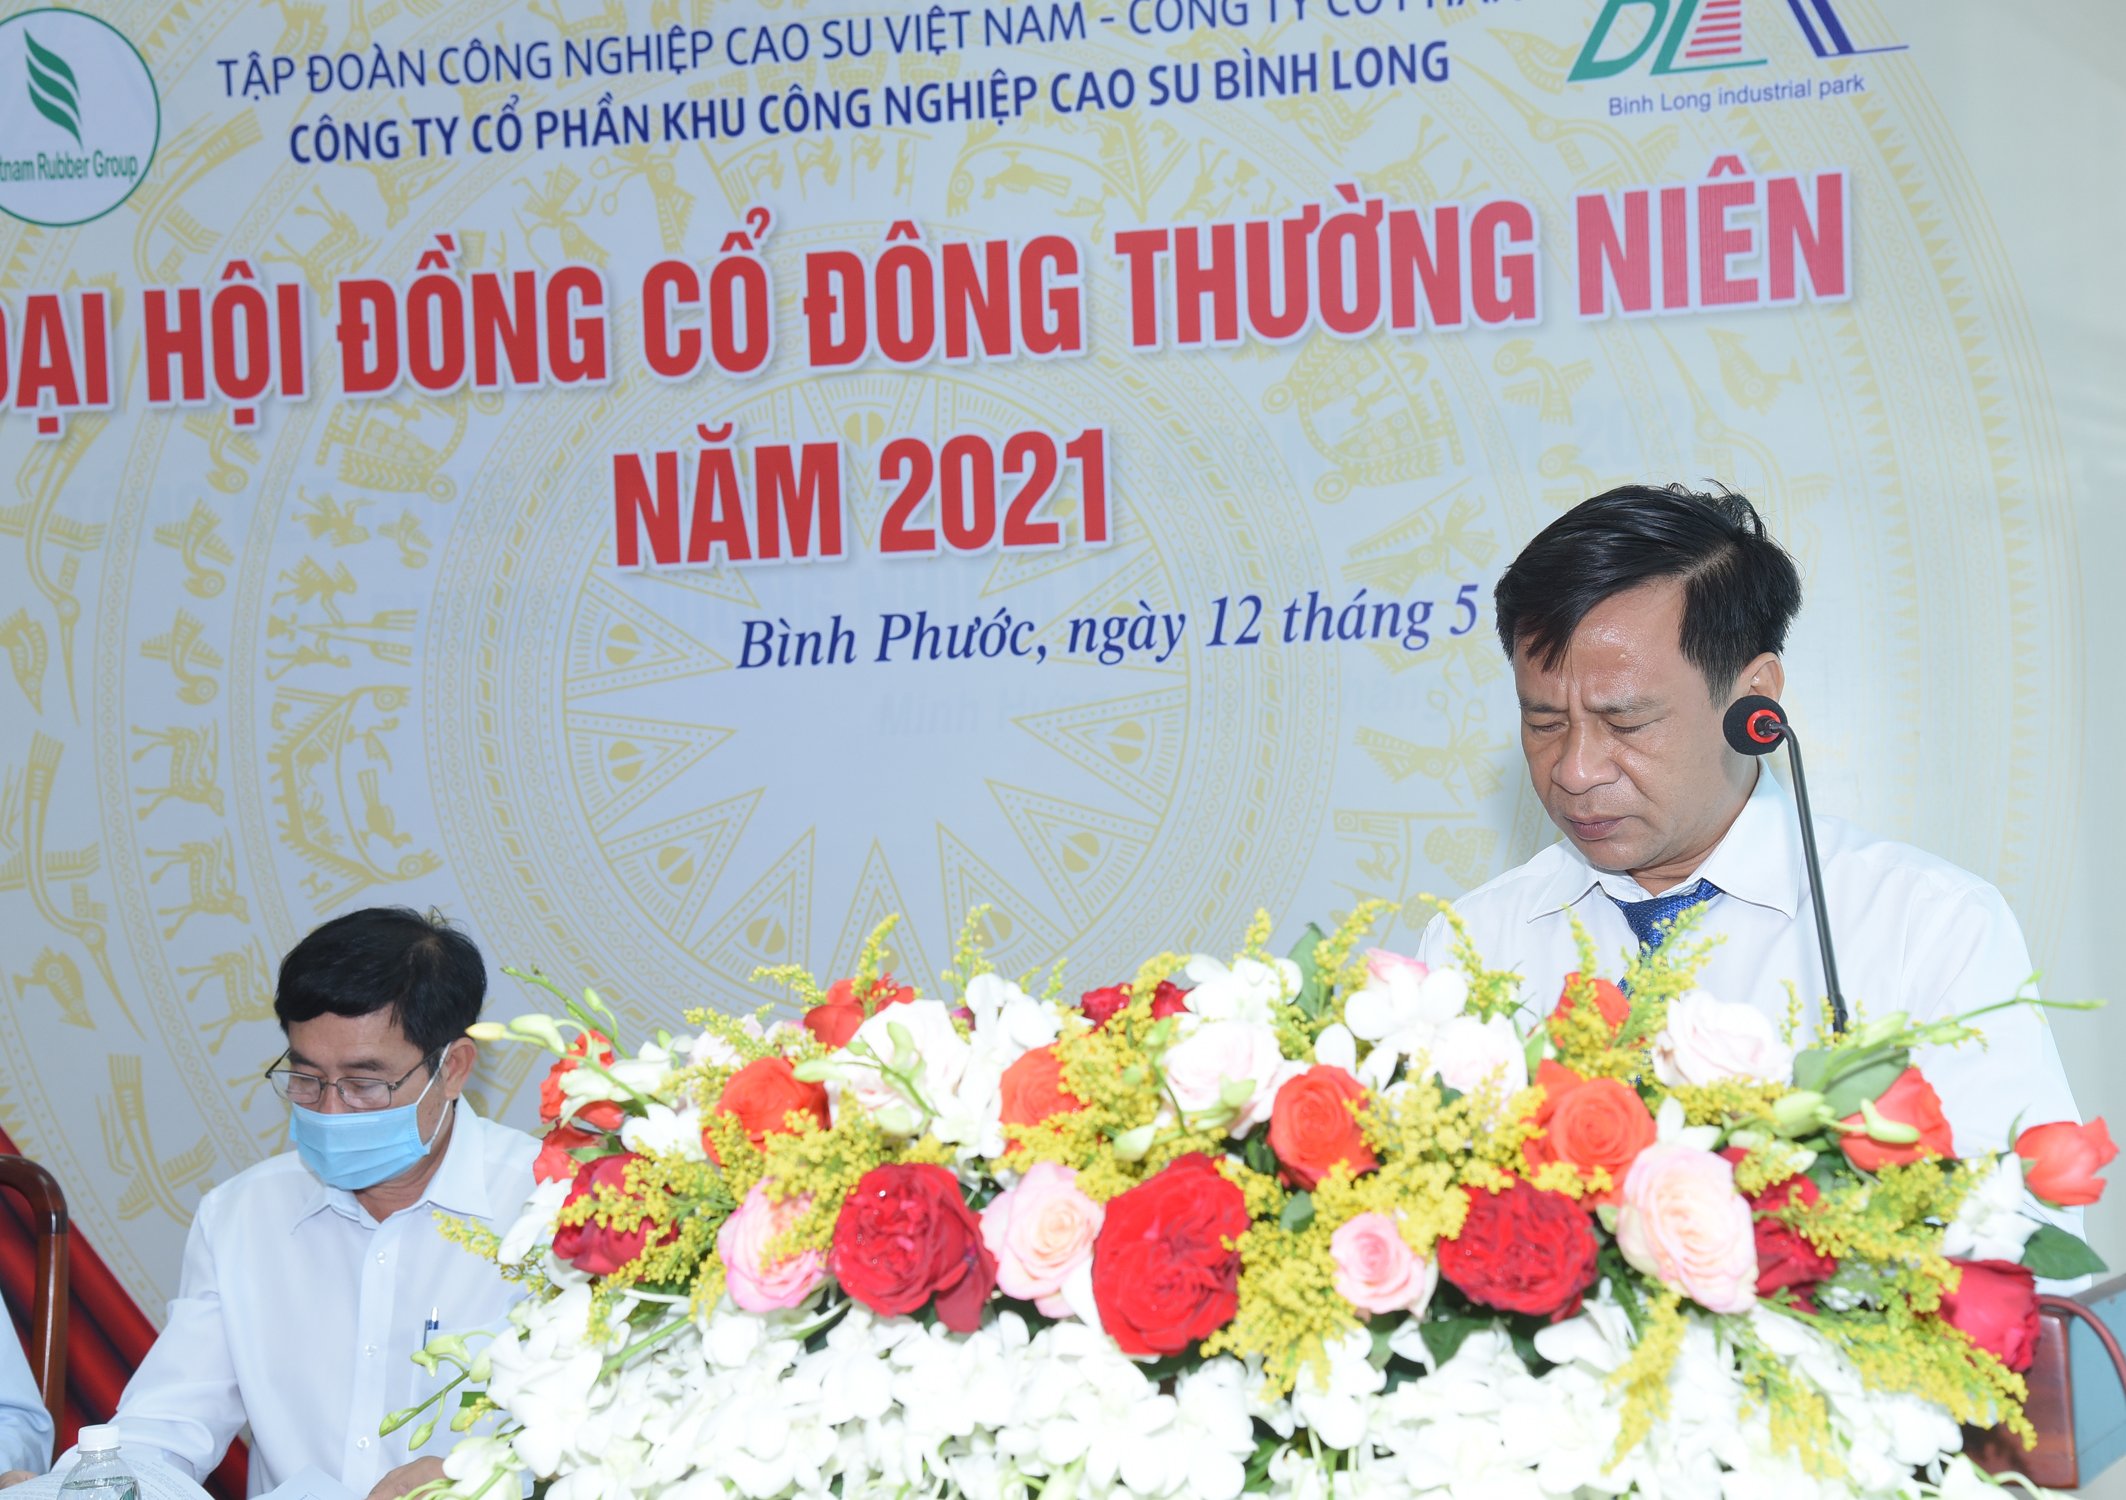 Ông Vũ Mạnh Xuân Tùng - Trưởng ban kiểm soát báo cáo hoạt động của Ban kiểm soát năm 2020, phương hướng nhiệm vụ năm 2021